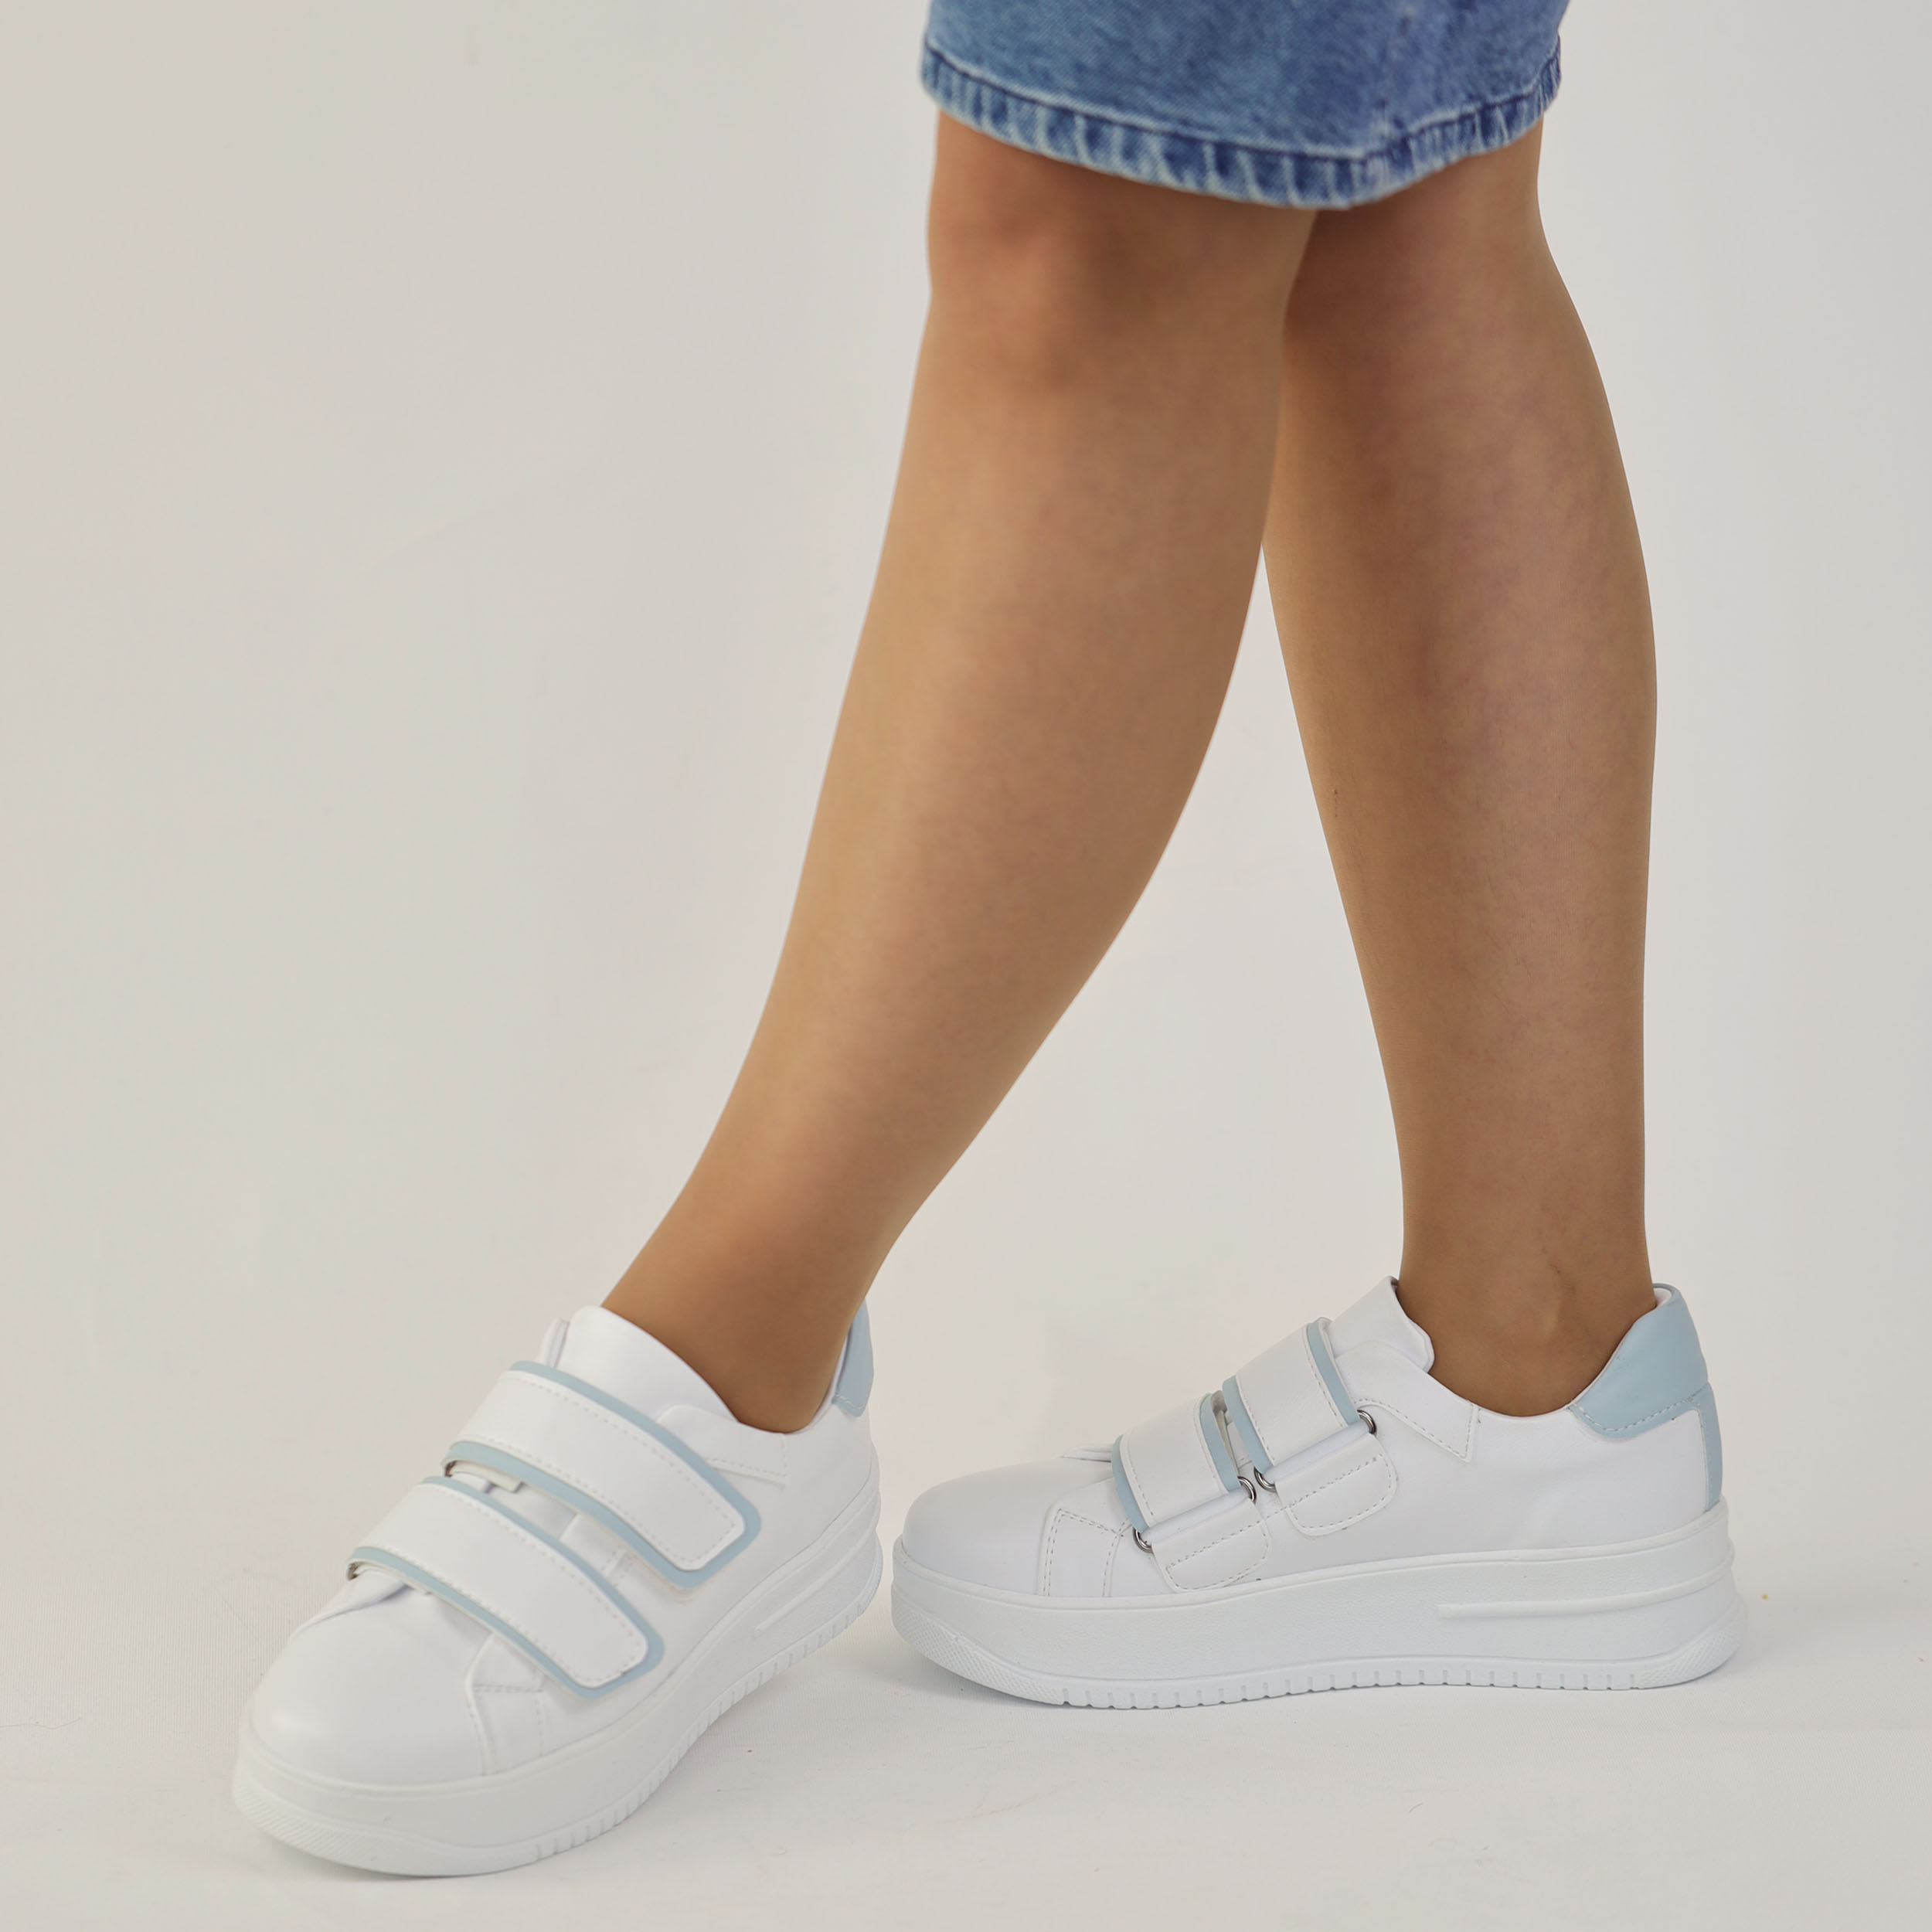 Kadın Cırtlı Beyaz Mavi Kalın Yüksek Tabanlı 5 cm Günlük Spor Ayakkabı, Renk: Beyaz, Beden: 38